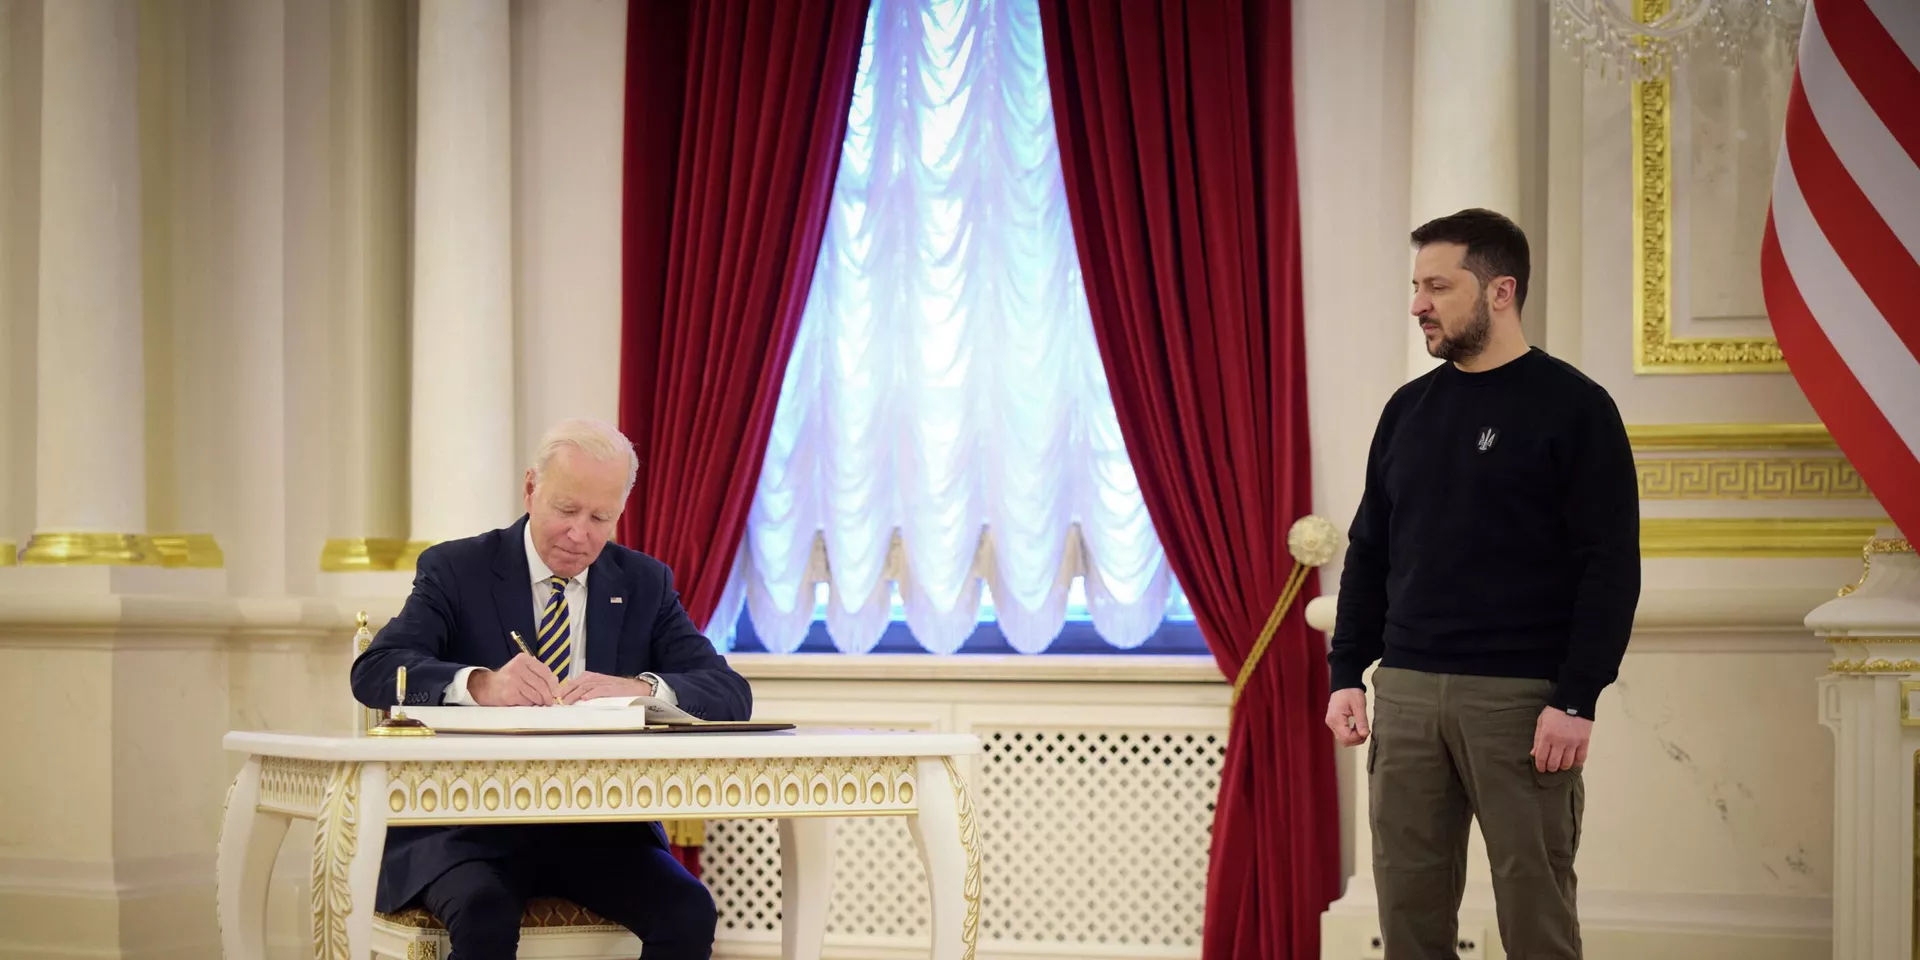 Президент США Джо Байден и президент Украины Владимир Зеленский в Киеве, Украина. 20 февраля 2023 года - ИноСМИ, 1920, 21.03.2023